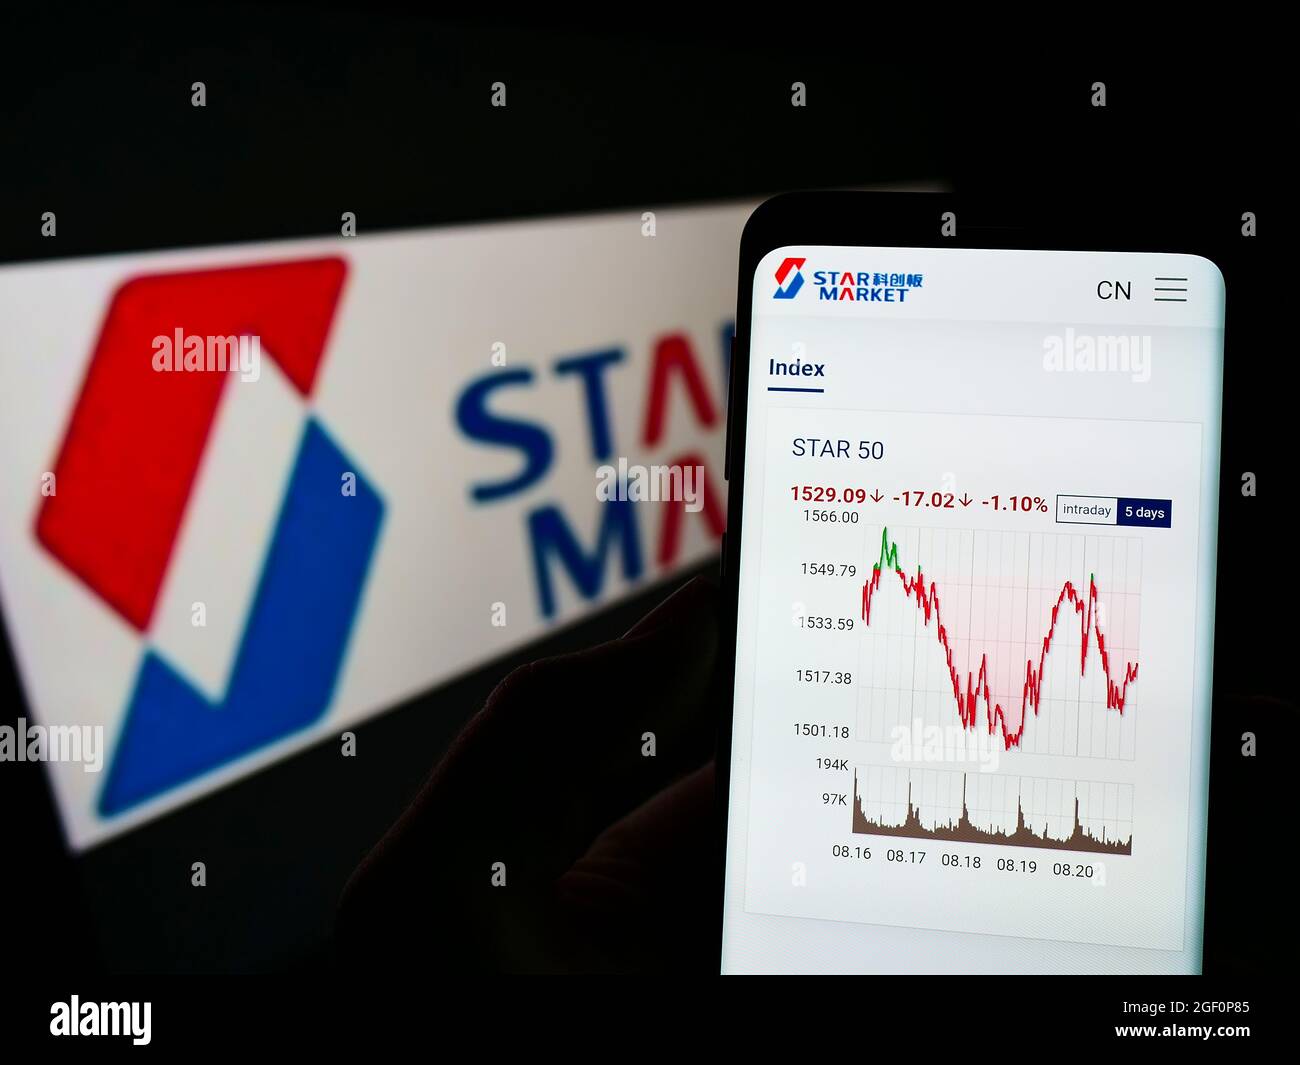 Persona que sostiene el teléfono móvil con la página web de la Bolsa de Valores de Shanghai STAR Market en la pantalla frente al logotipo de la empresa. Enfoque en el centro de la pantalla del teléfono. Foto de stock